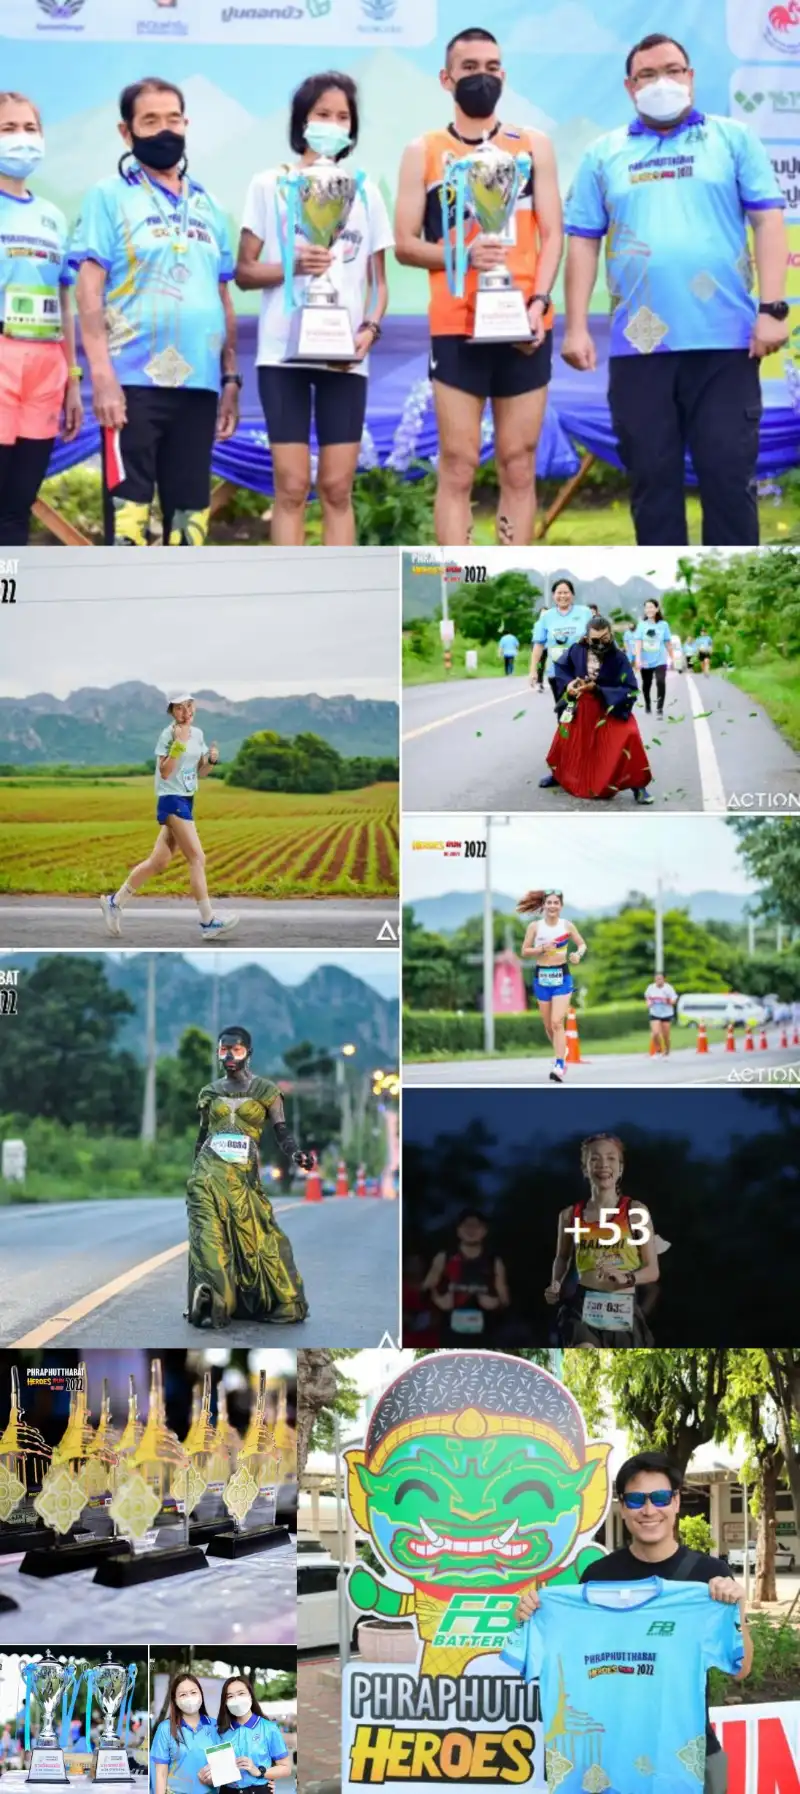 BHeroes Run 2022 โรงพยาบาลพระพุทธบาท 10 ก.ค.65 [Finished] งานวิ่งในไทยที่จัดและจบไปแล้วในรอบปี 2565